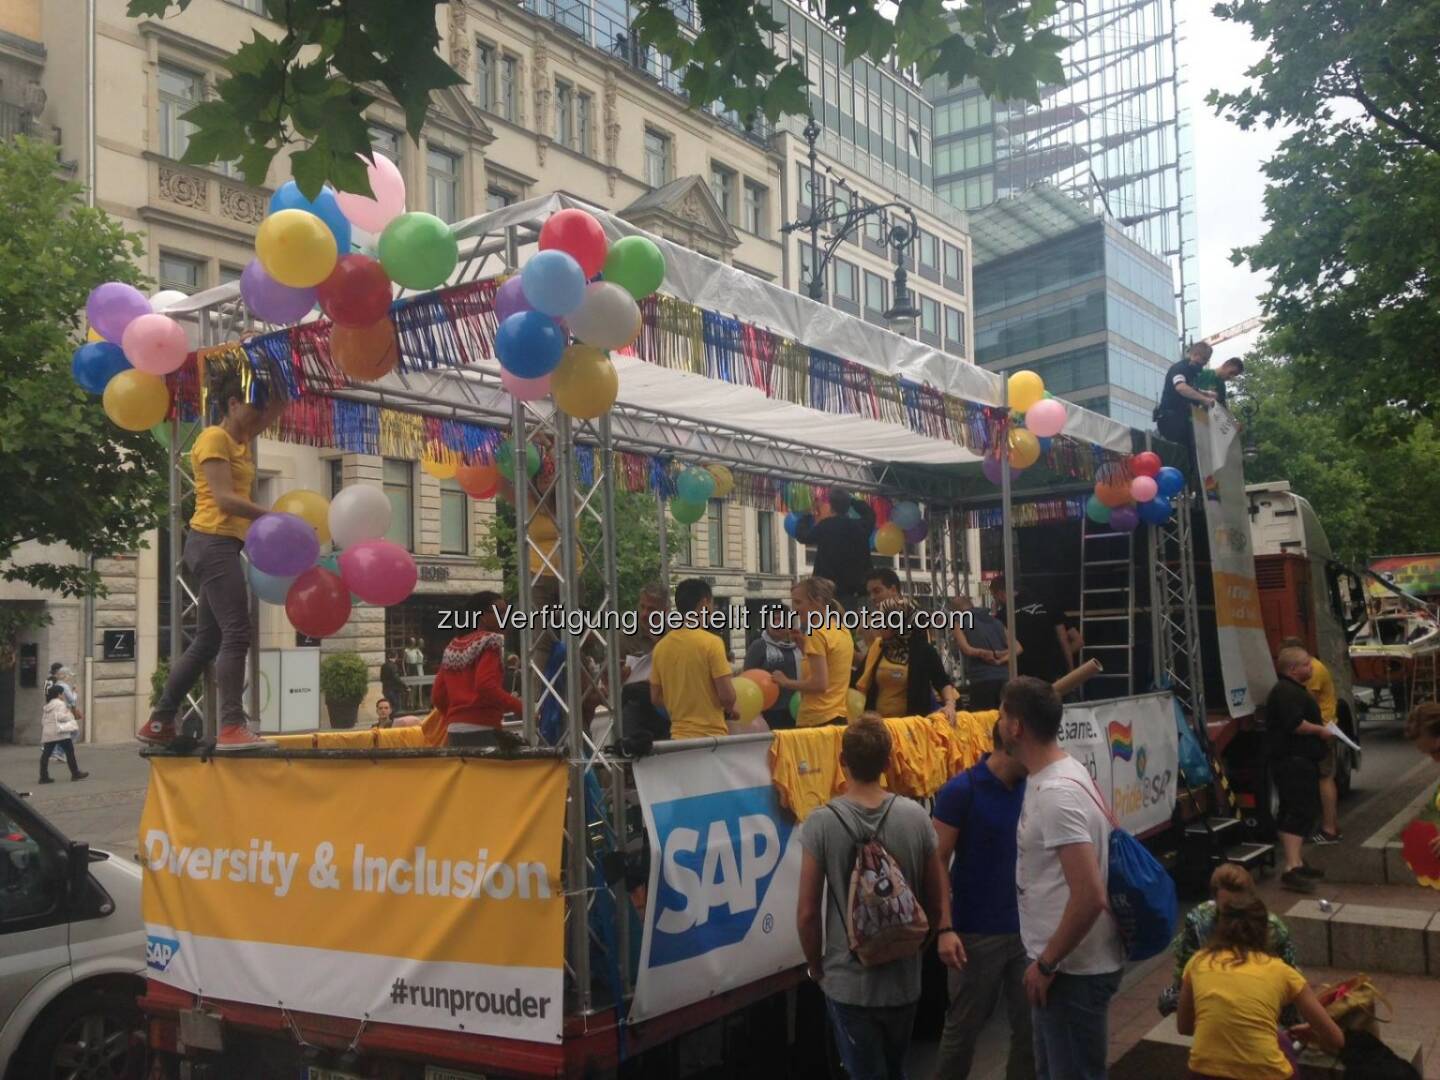 SAP: Die USA sagen Ja zur Homo-Ehe! Das feierten wir heute auf dem Christopher Street Day in Berlin: http://spr.ly/6184BBUj6 Berliner CSD e.V.  Source: http://facebook.com/SAP